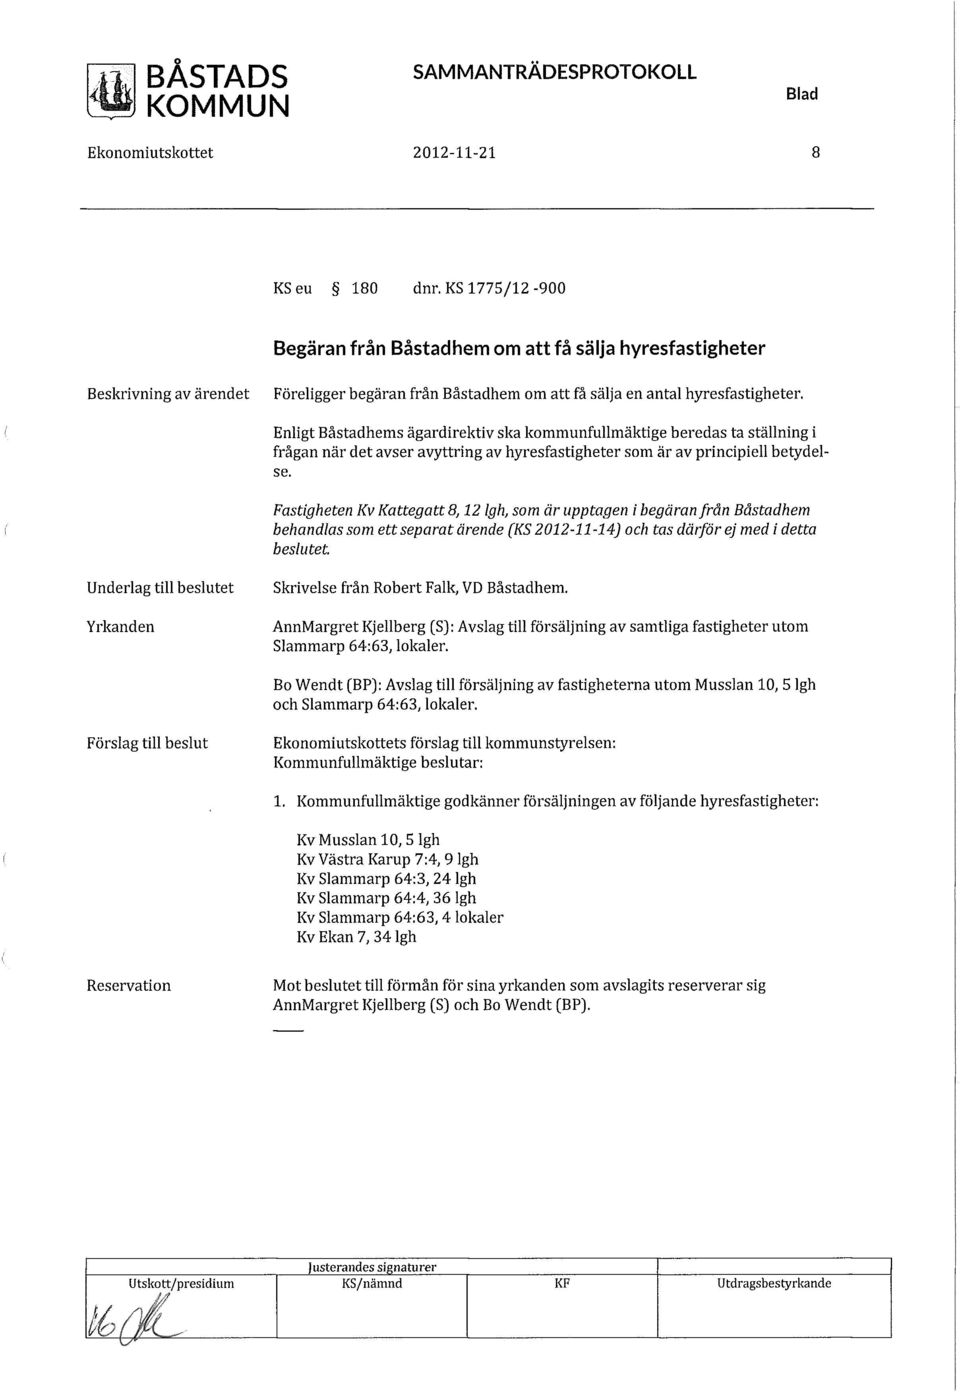 Fastigheten Kv Kattegatt 8,12 Igh, som är upptagen i begäran från Båstadhem behandlas som ett separat ärende (KS 2012-11-14) och tas därför ej med i detta beslutet.